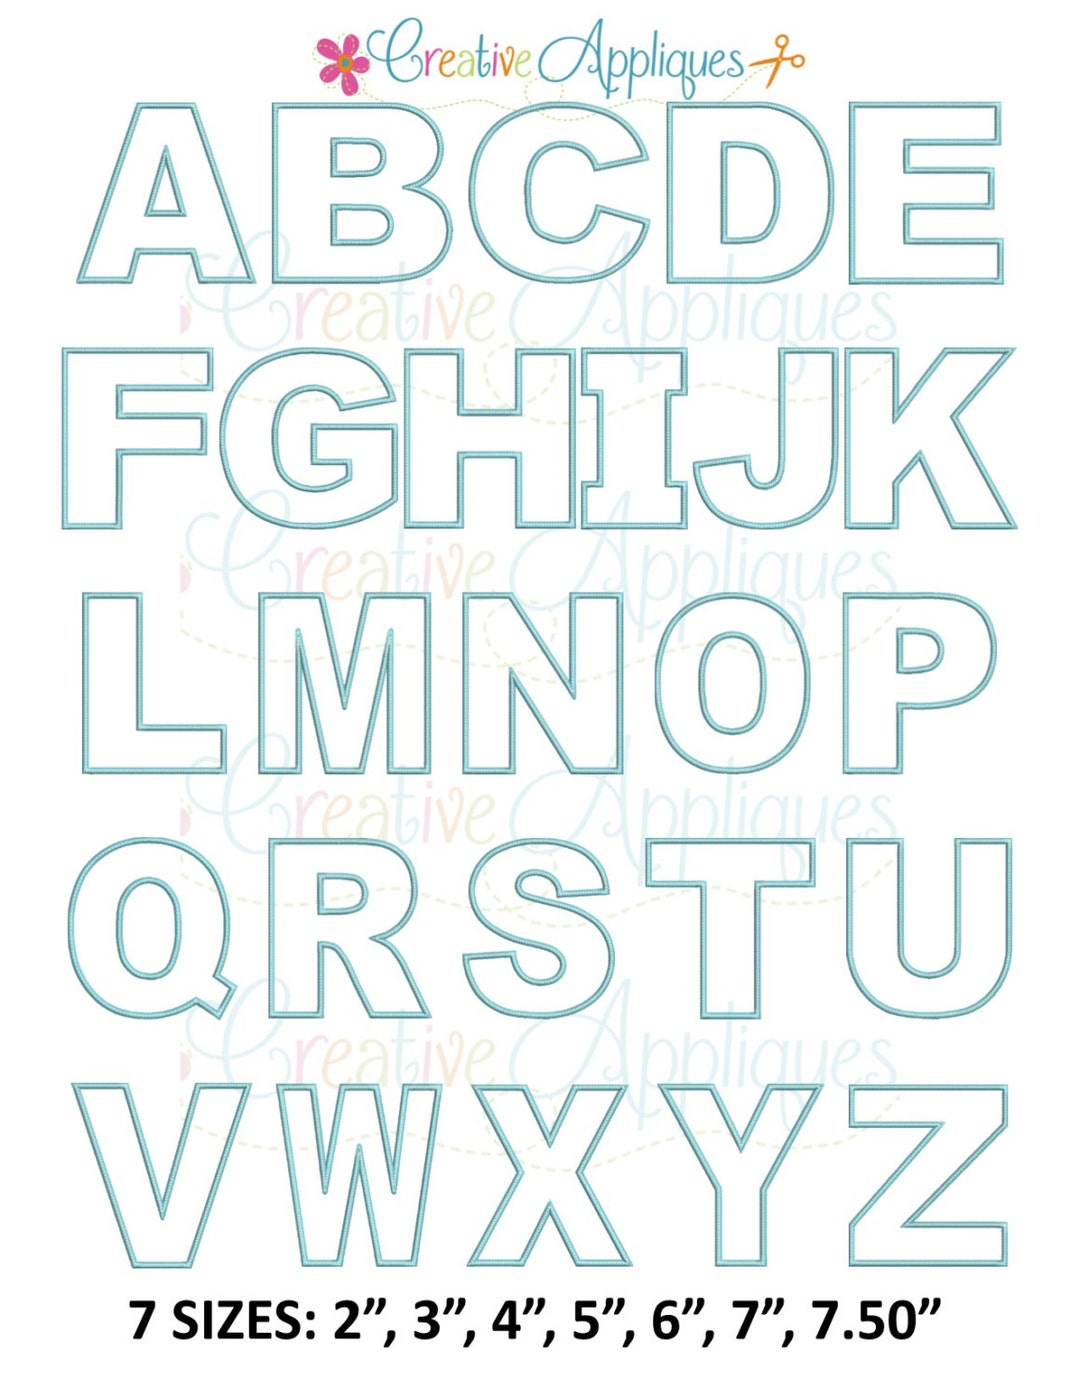 Applique Alphabet Letter Set A-Z Applique Machine Embroidery Design 7 Sizes Alphabet Applique, Applique Letters, 2 Thru 8 - Etsy New Zealand - Free Printable Fonts For Applique